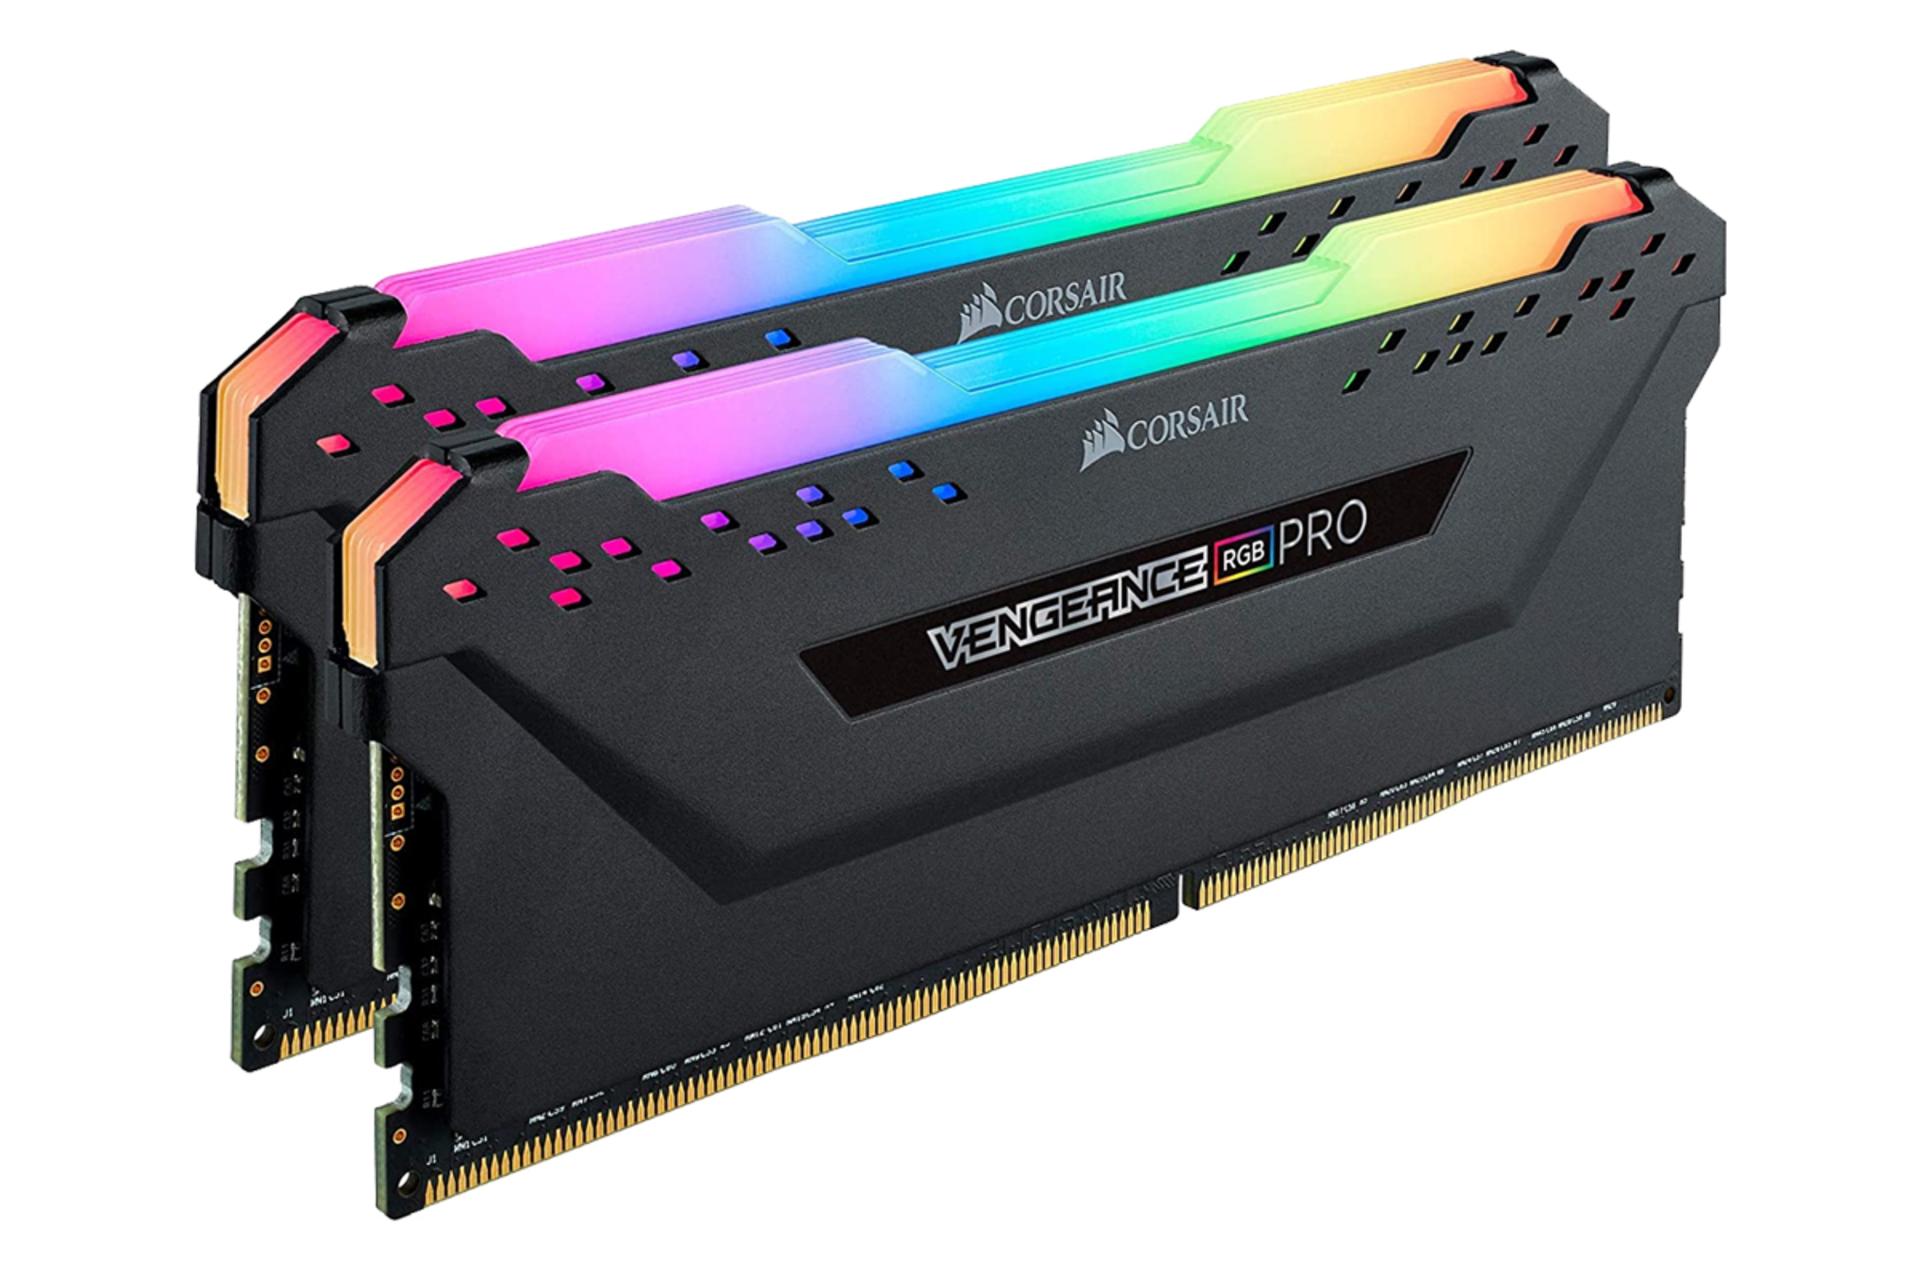 نمای کناری حافظه رم کورسیر VENGEANCE RGB PRO ظرفیت 16 گیگابایت (2x8) از نوع DDR4-3000